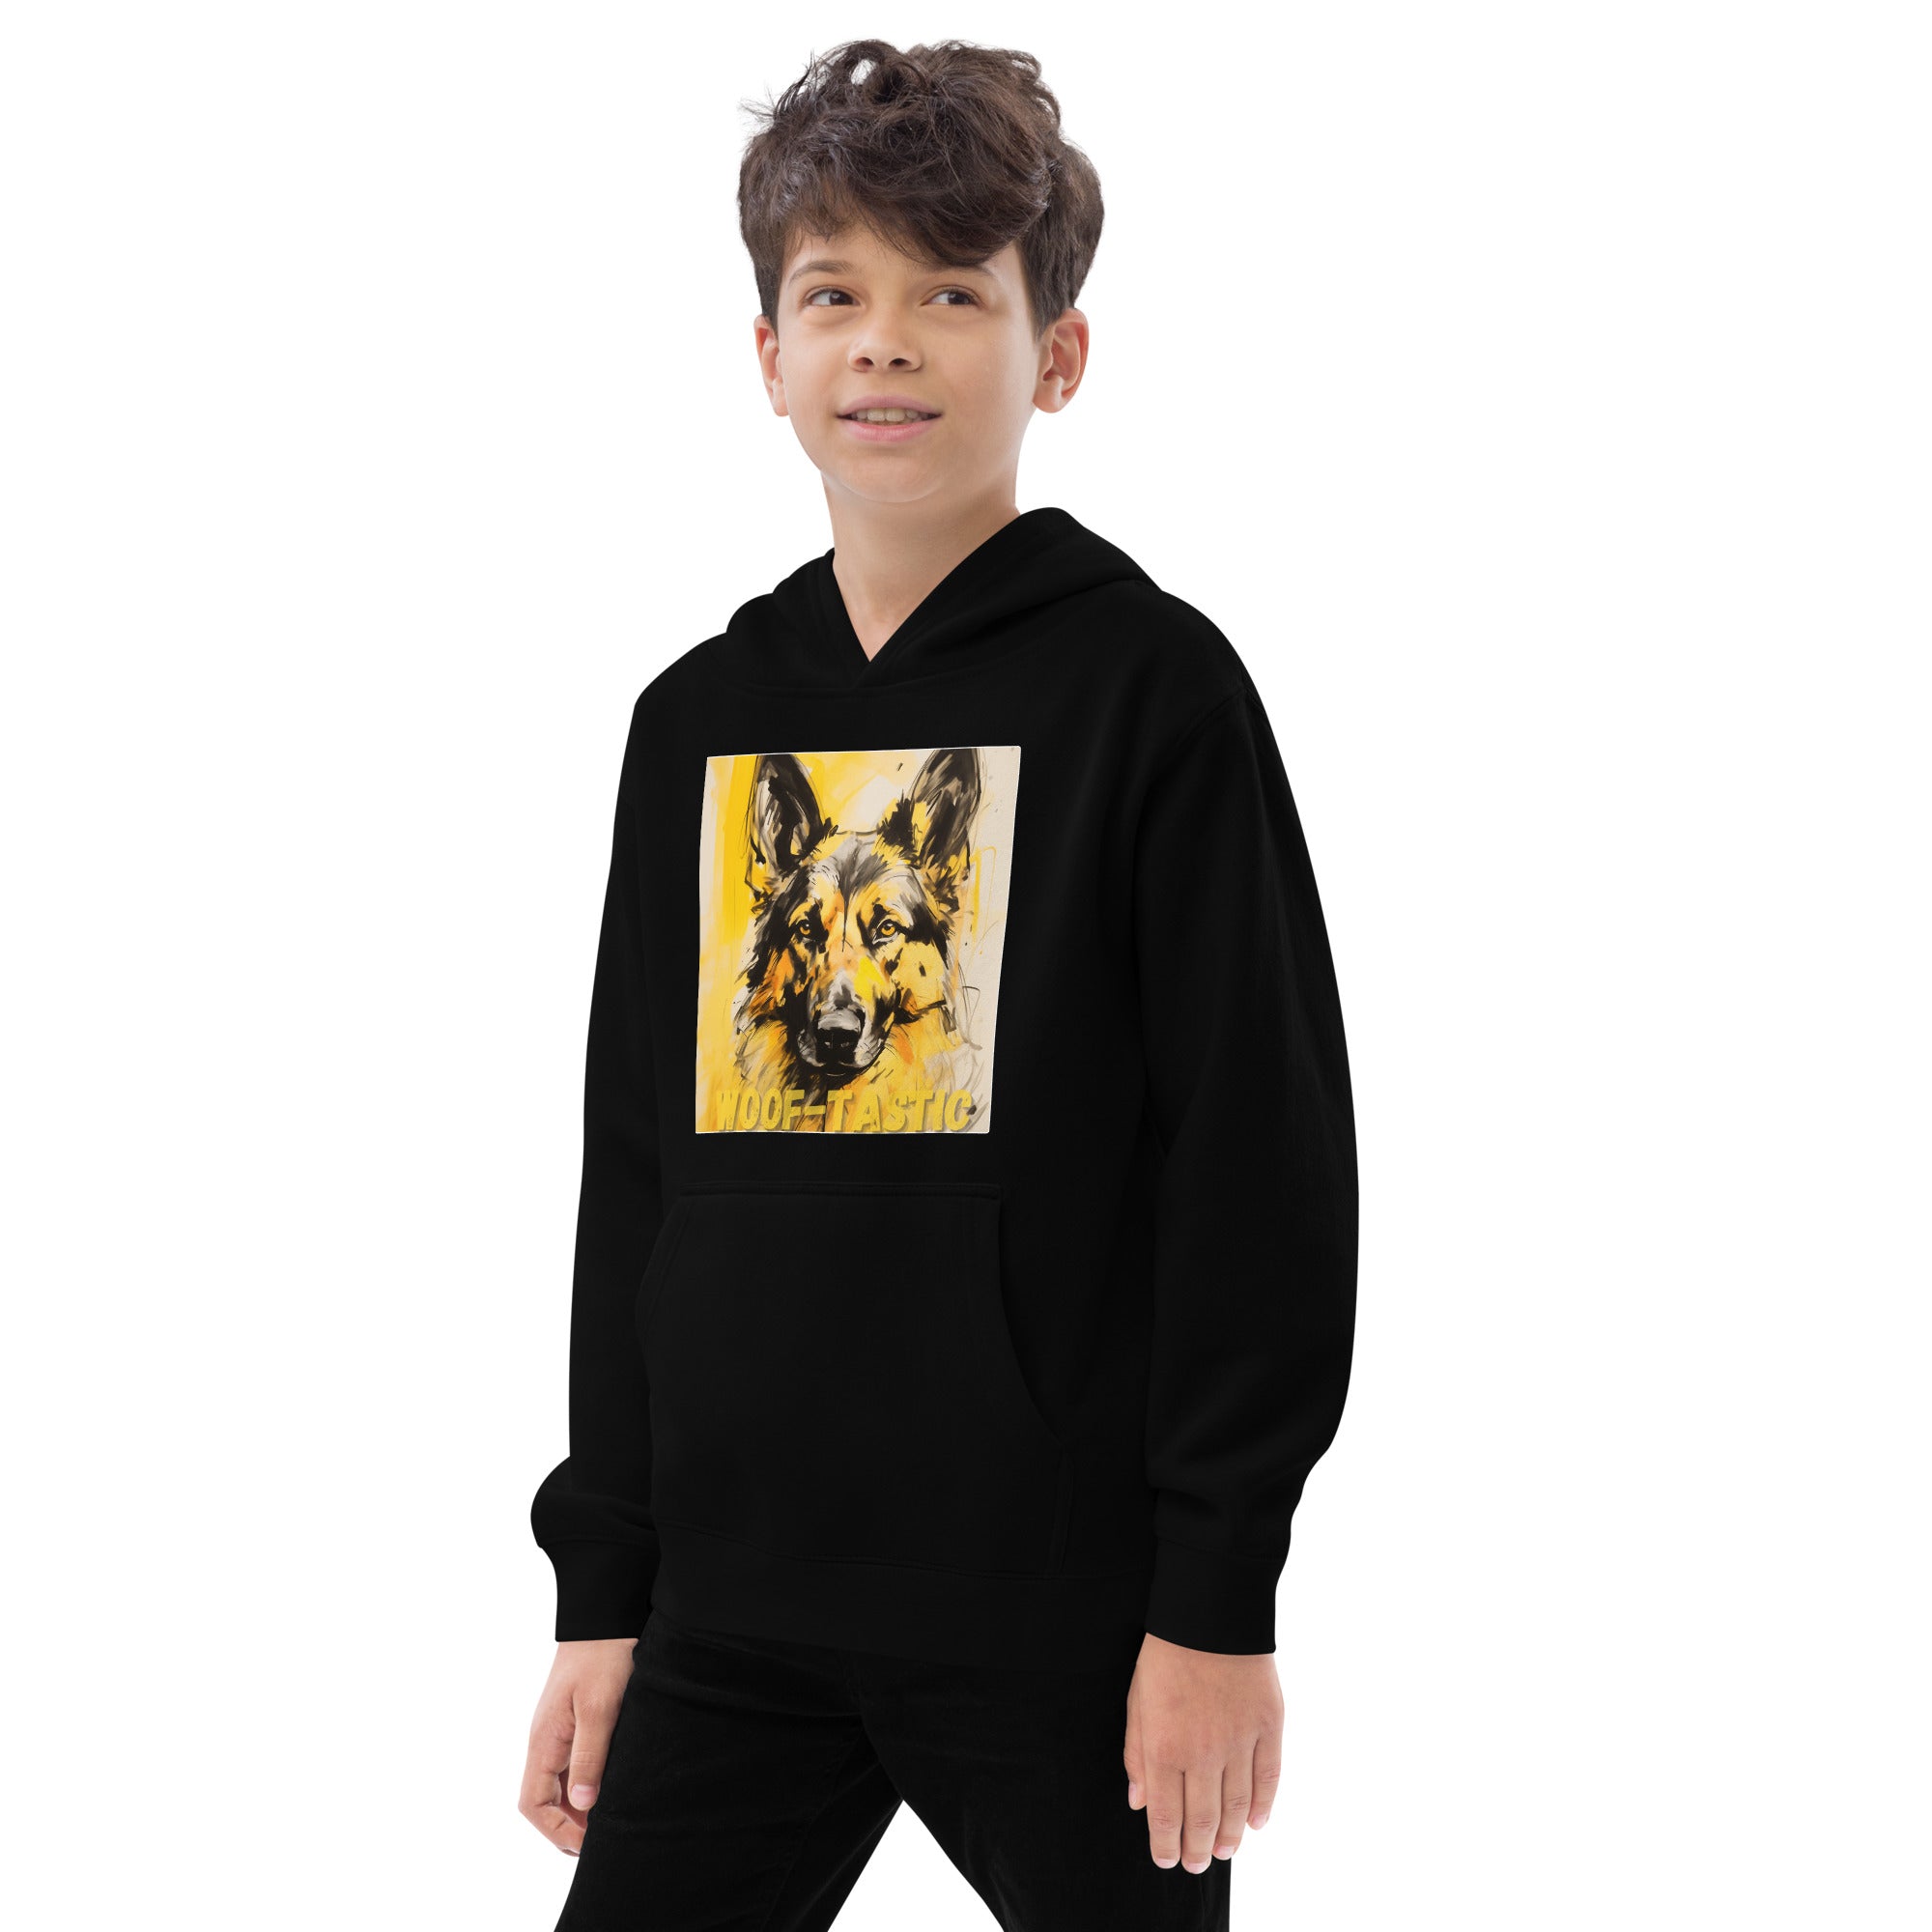 Kids fleece hoodie Woof-tastic German Shepherd